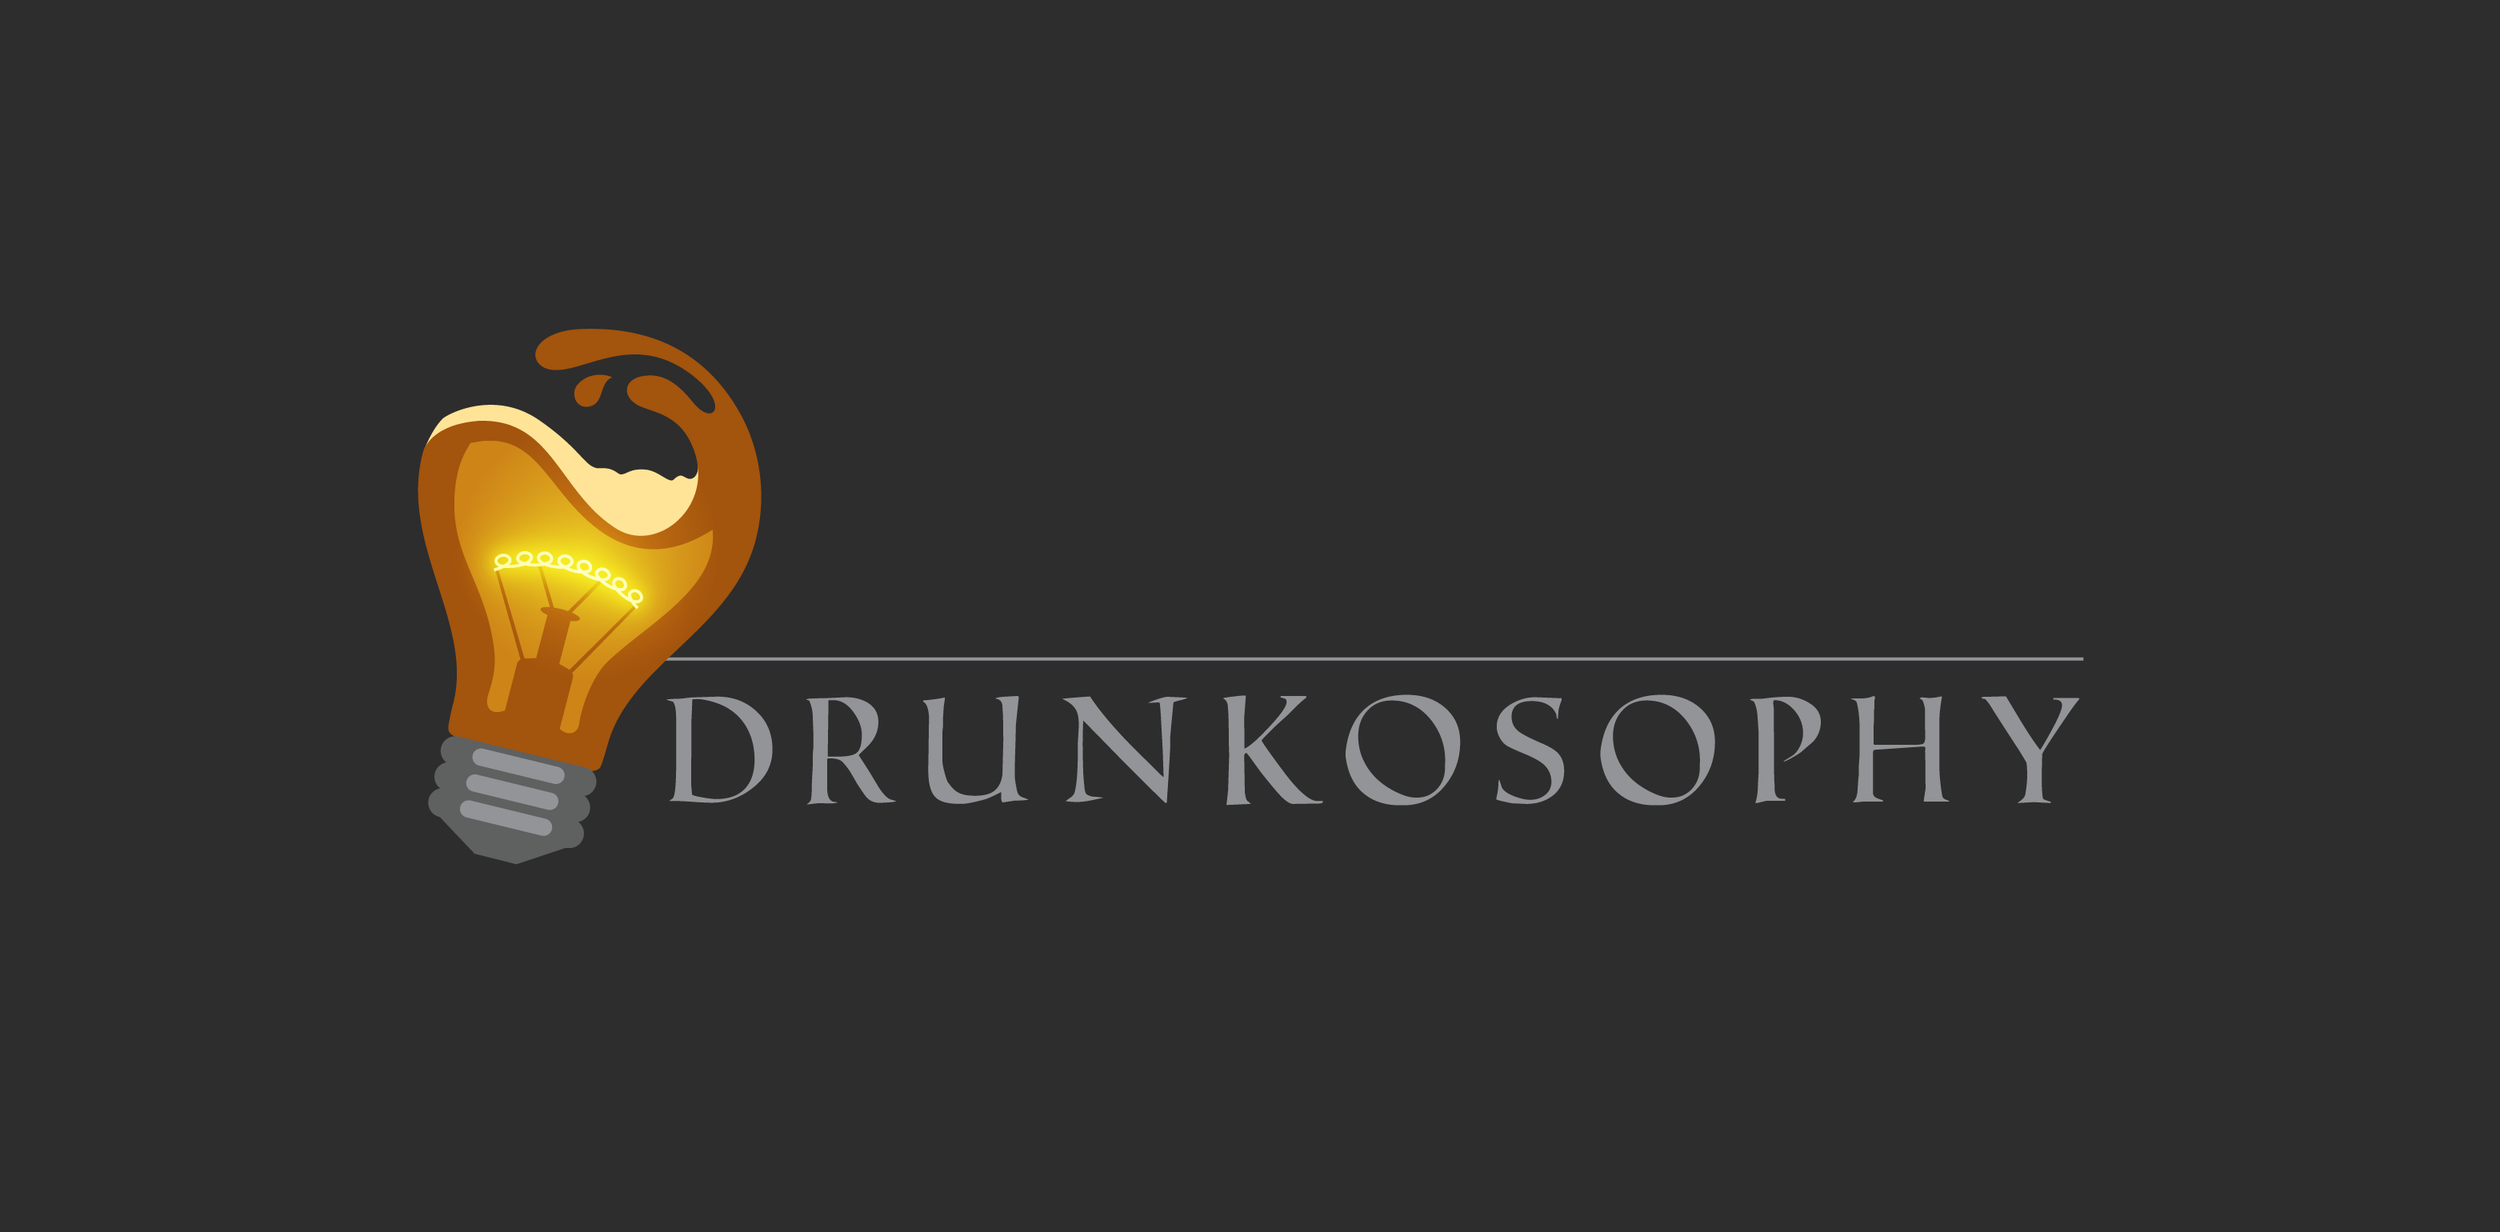 Drunkosophy